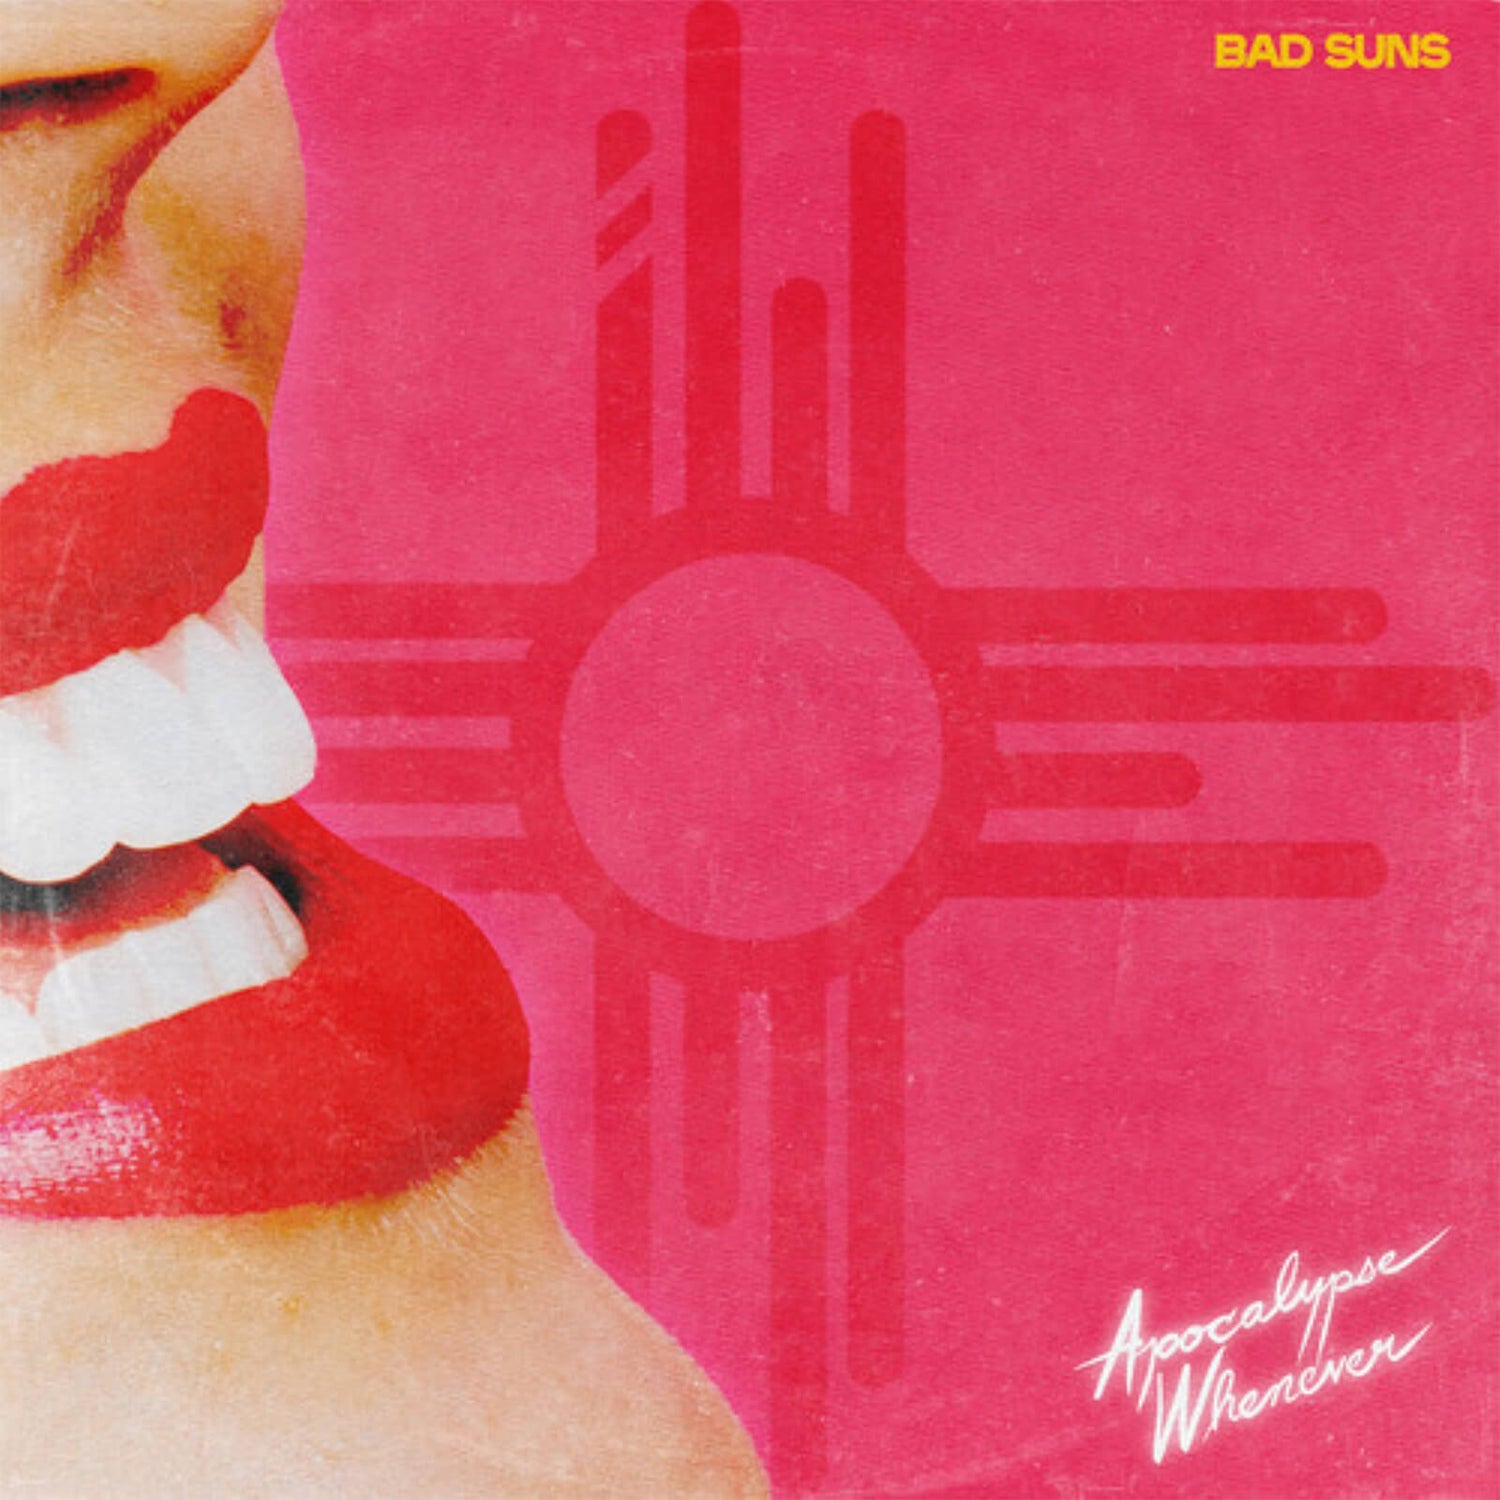 Bad Suns - Apocalypse Whenever Vinyl